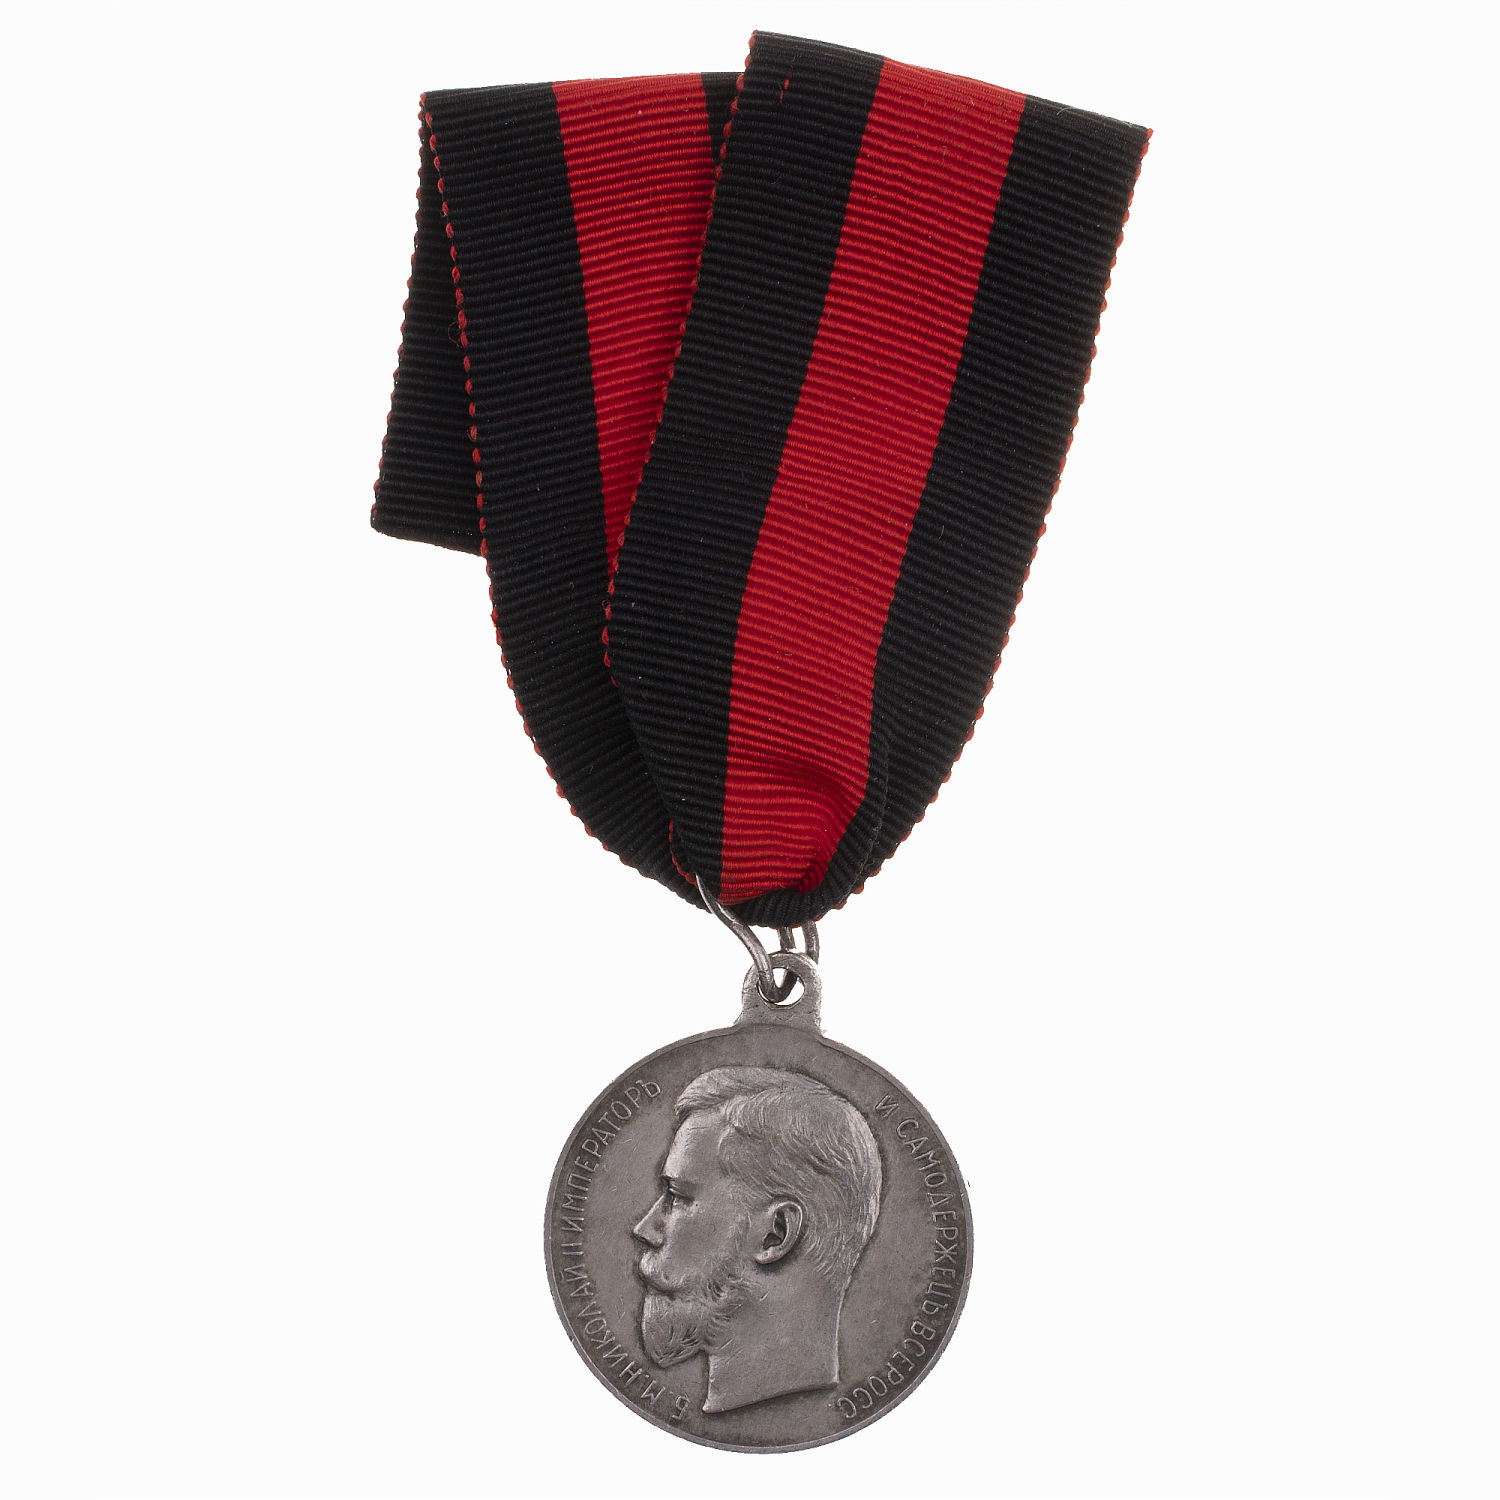 Медаль "За спасание погибавших" с портретом Императора Николая II (образца 1904 г) на ленте ордена Св. Владимира.